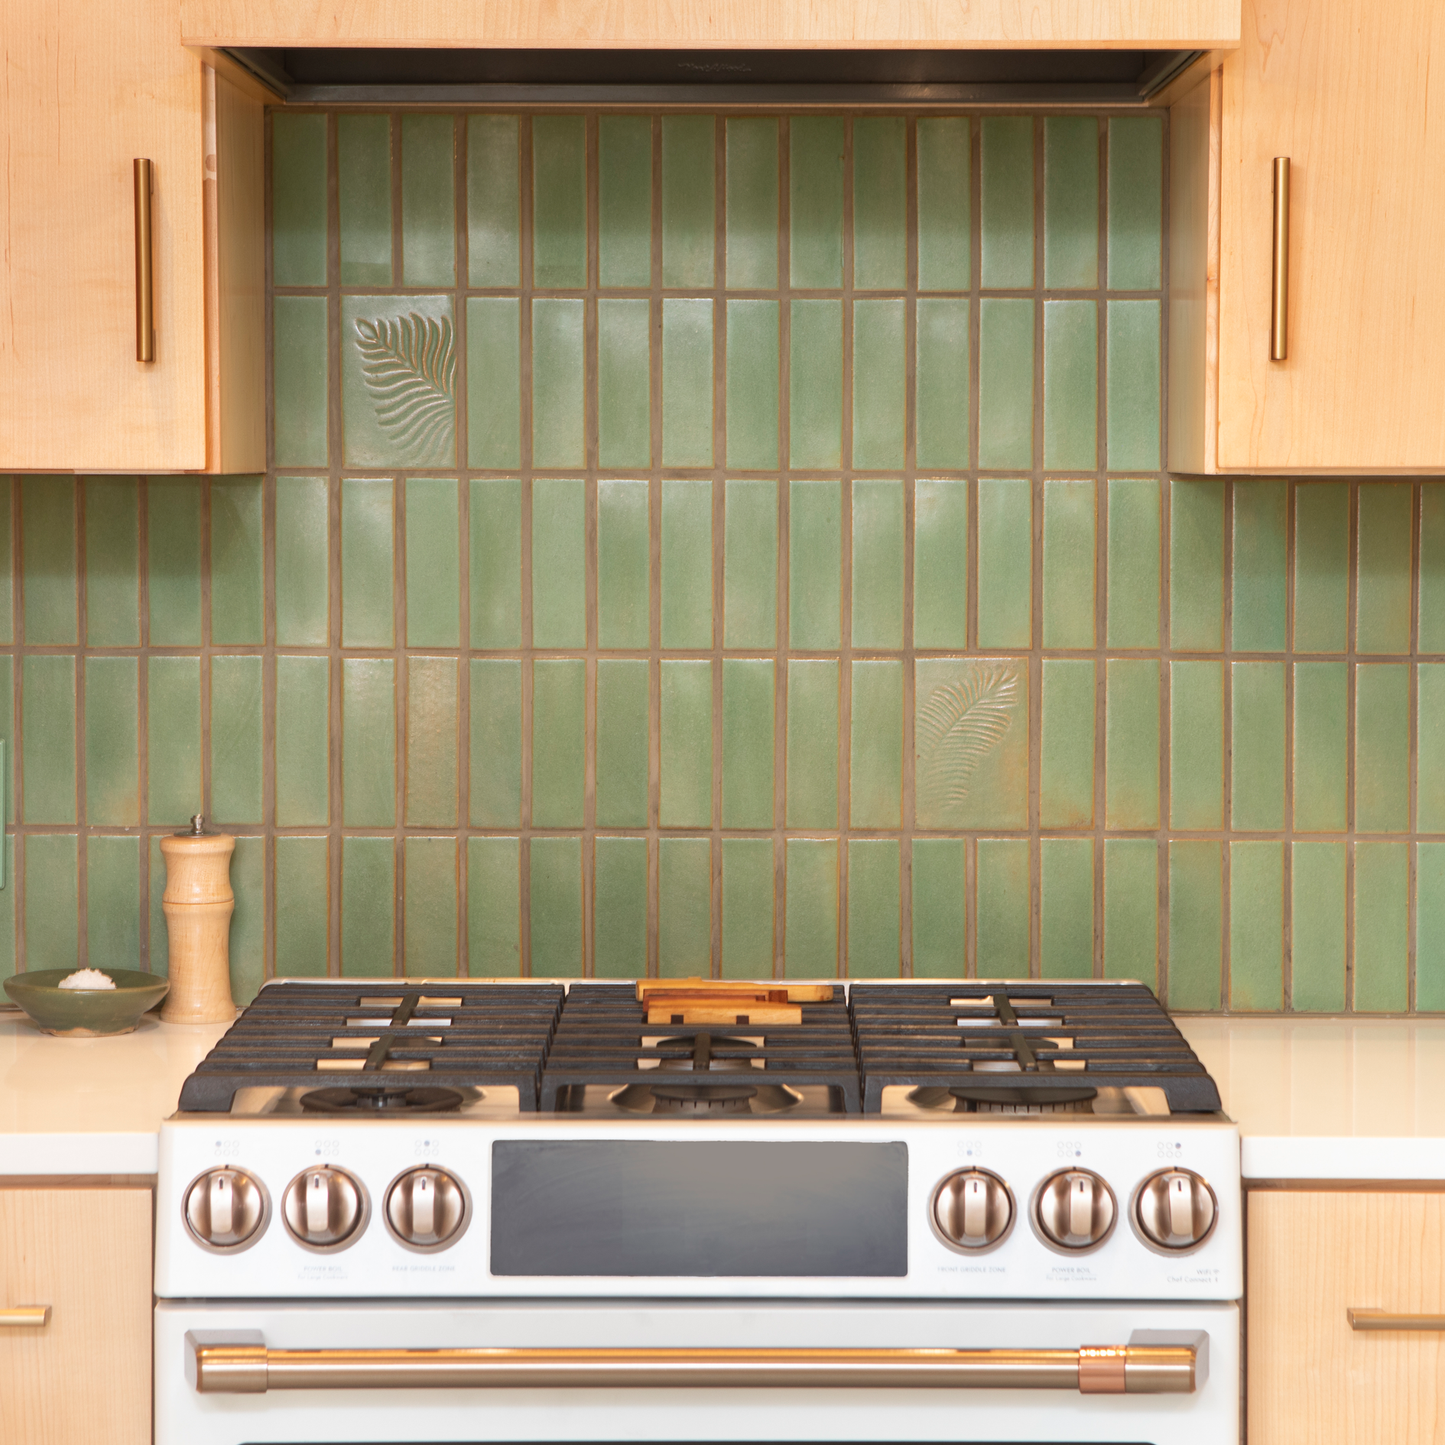 green kitchen backsplash with fern tile